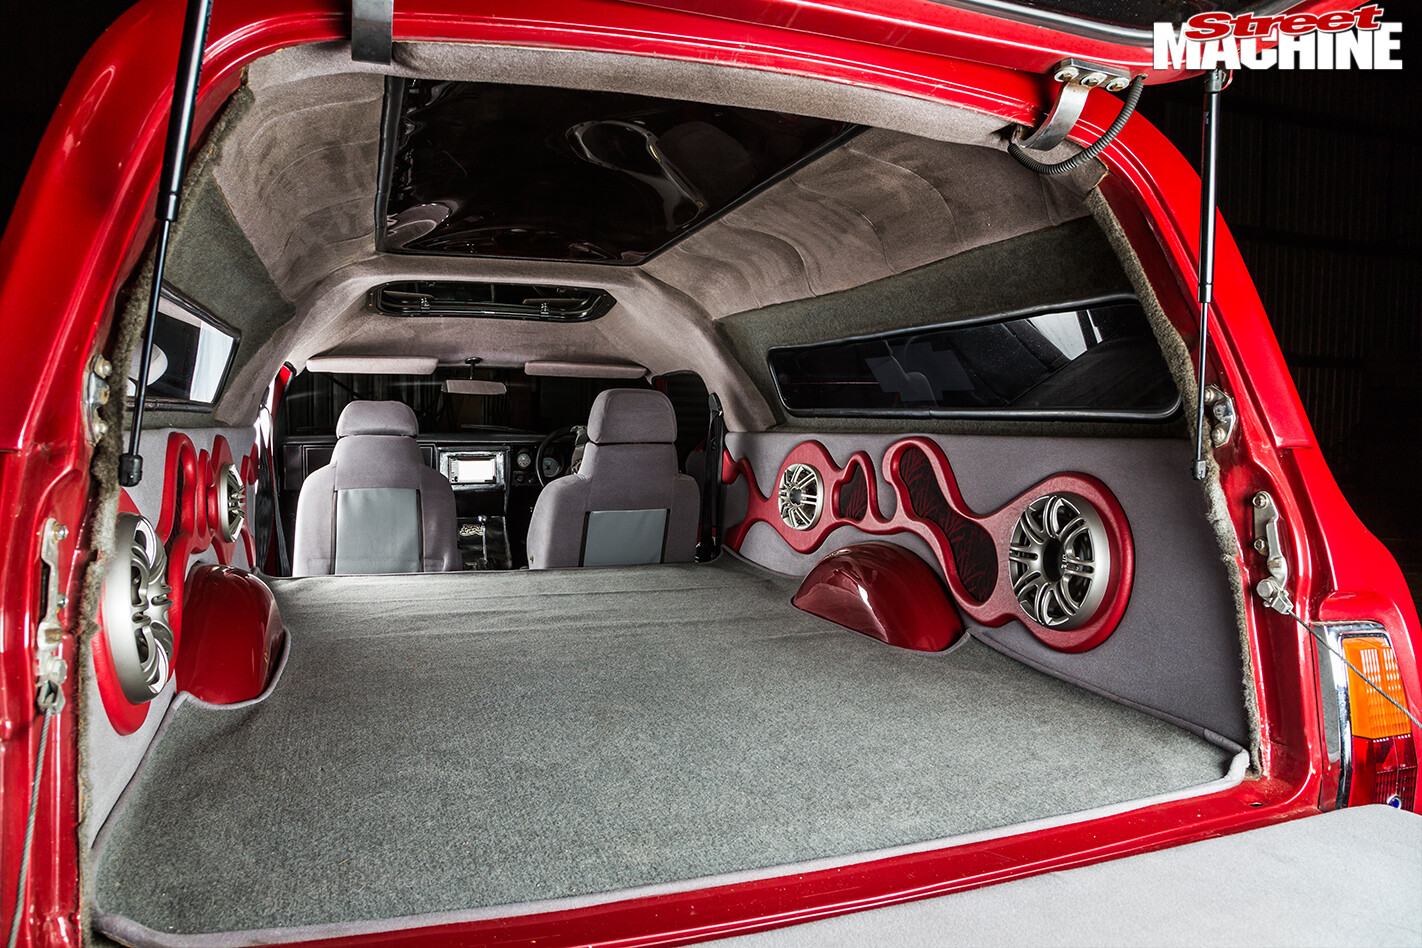 Foxy -lady -panel -van -interior -rear